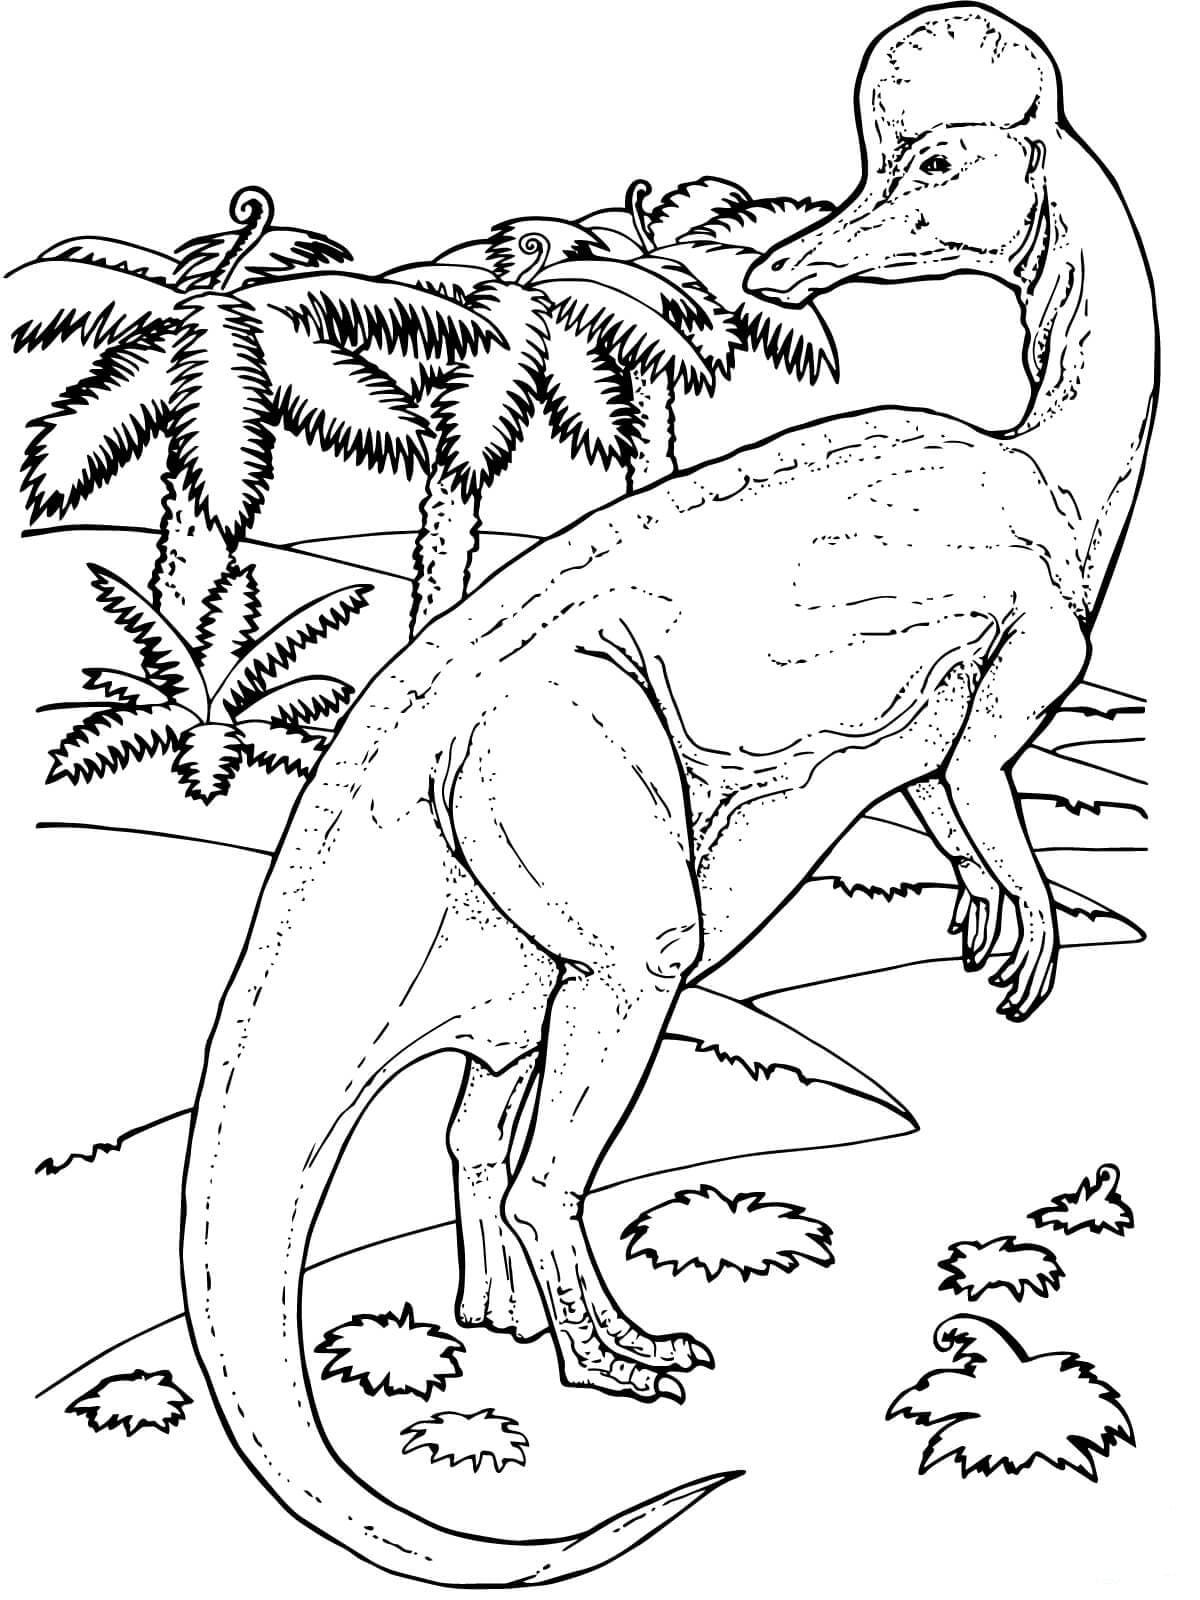 Раскраски Динозавры - Большая коллекция, распечатать бесплатно